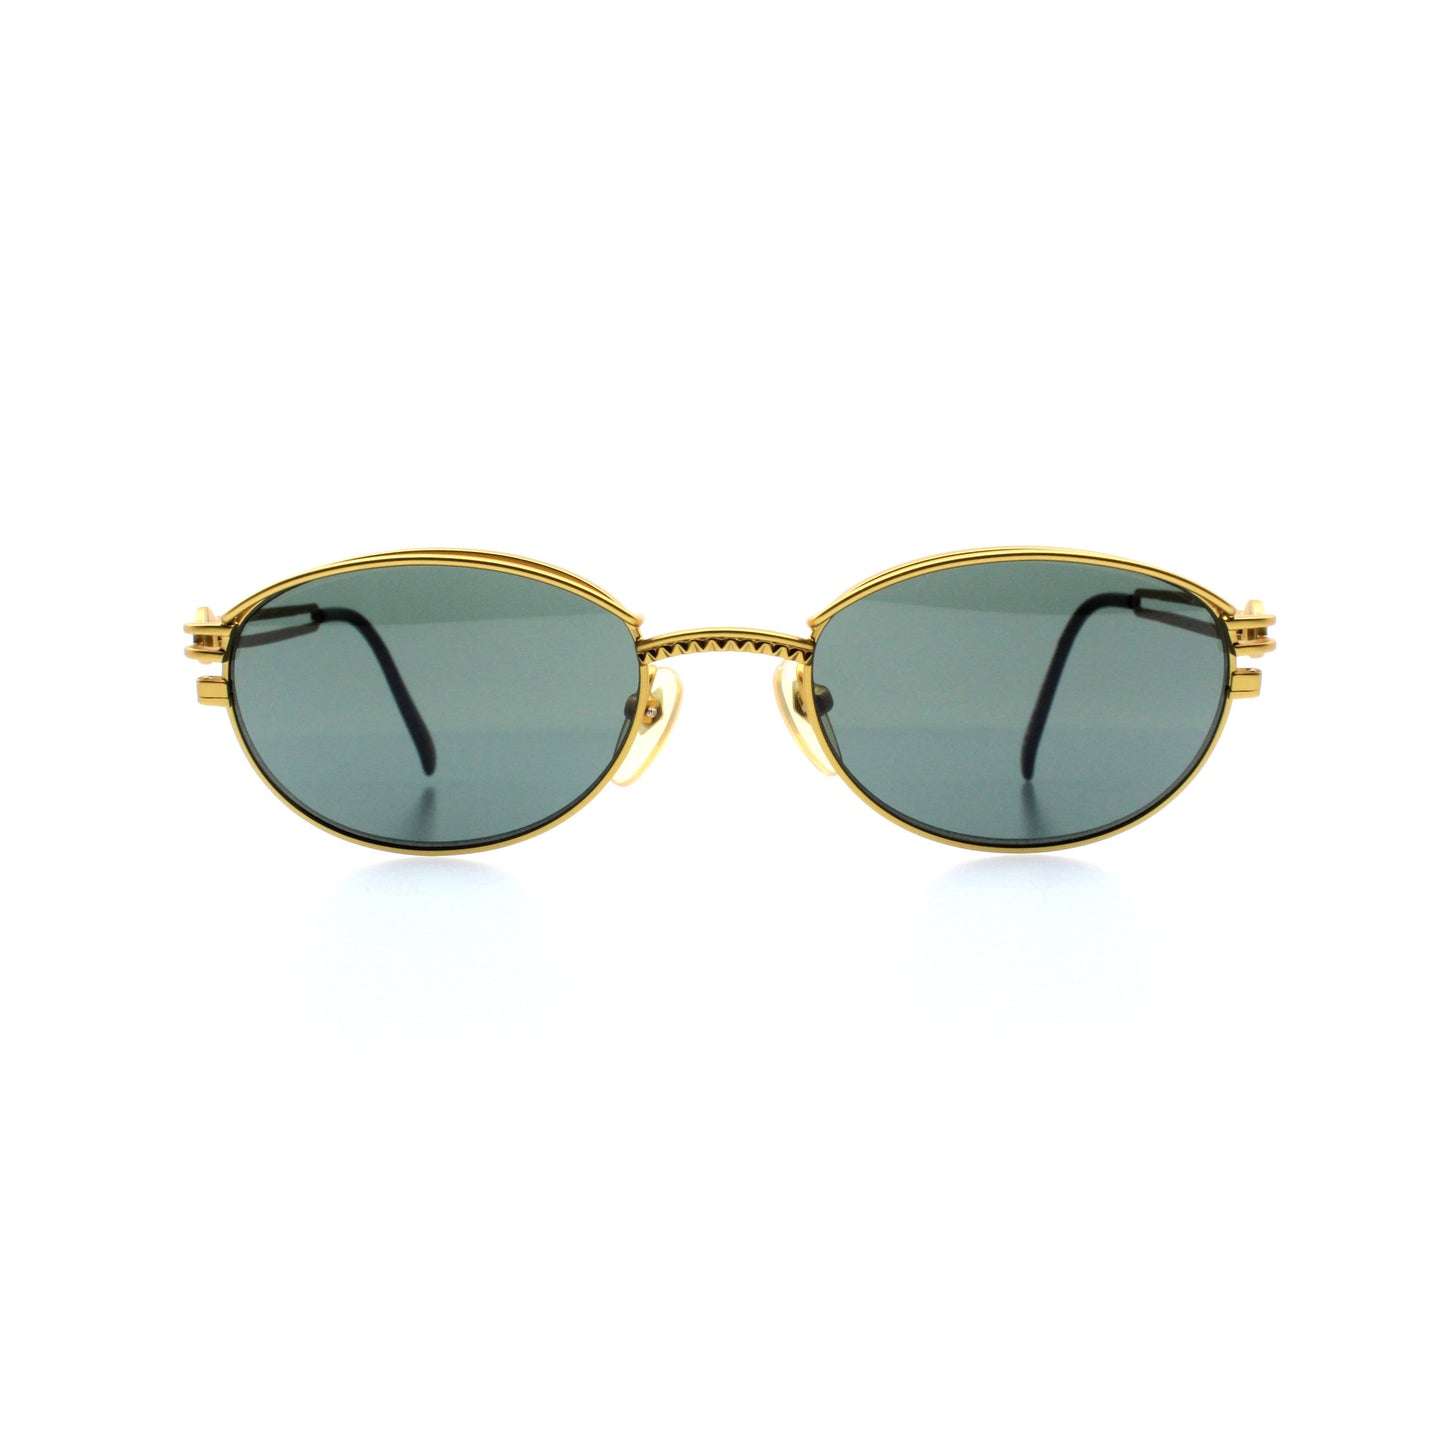 Gold Vintage Jean Paul Gaultier 58-6104 Sunglasses RSTKD Vintage